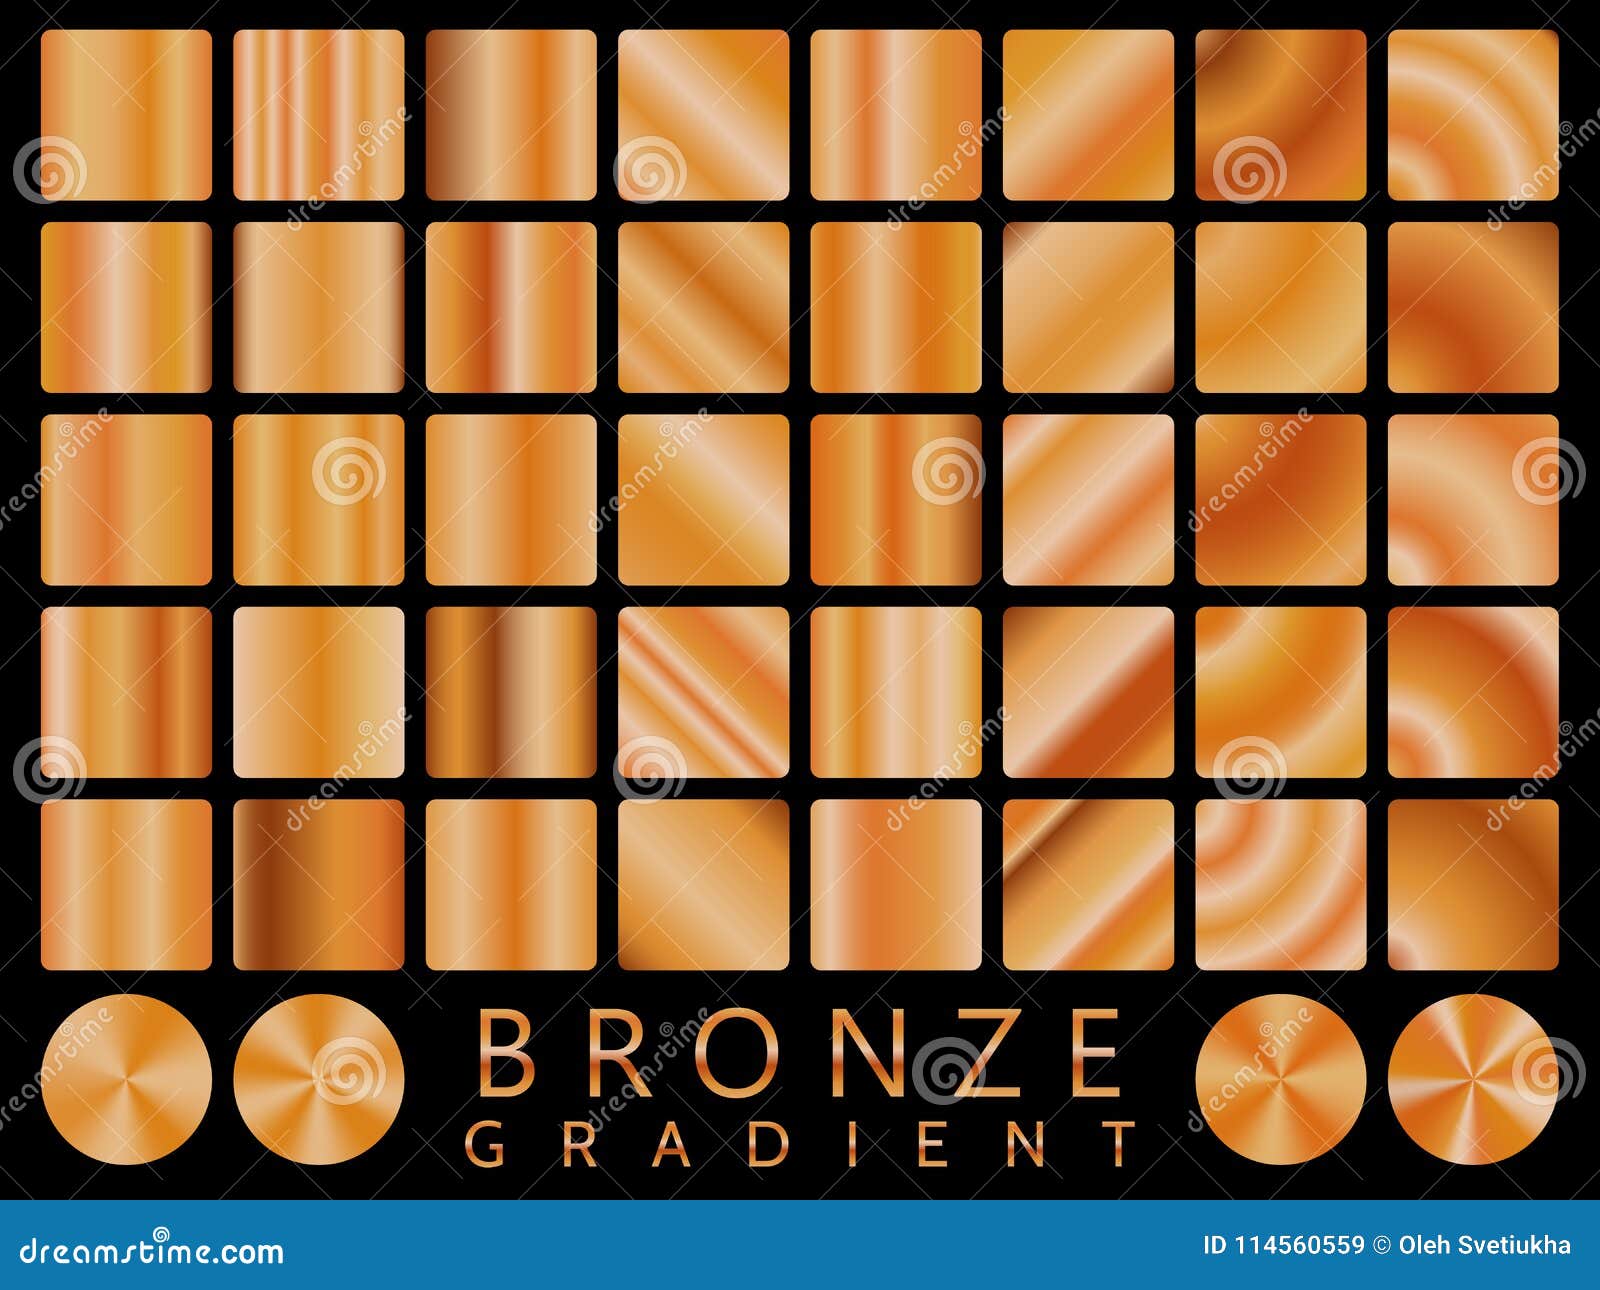 bronze line texture illustrator download